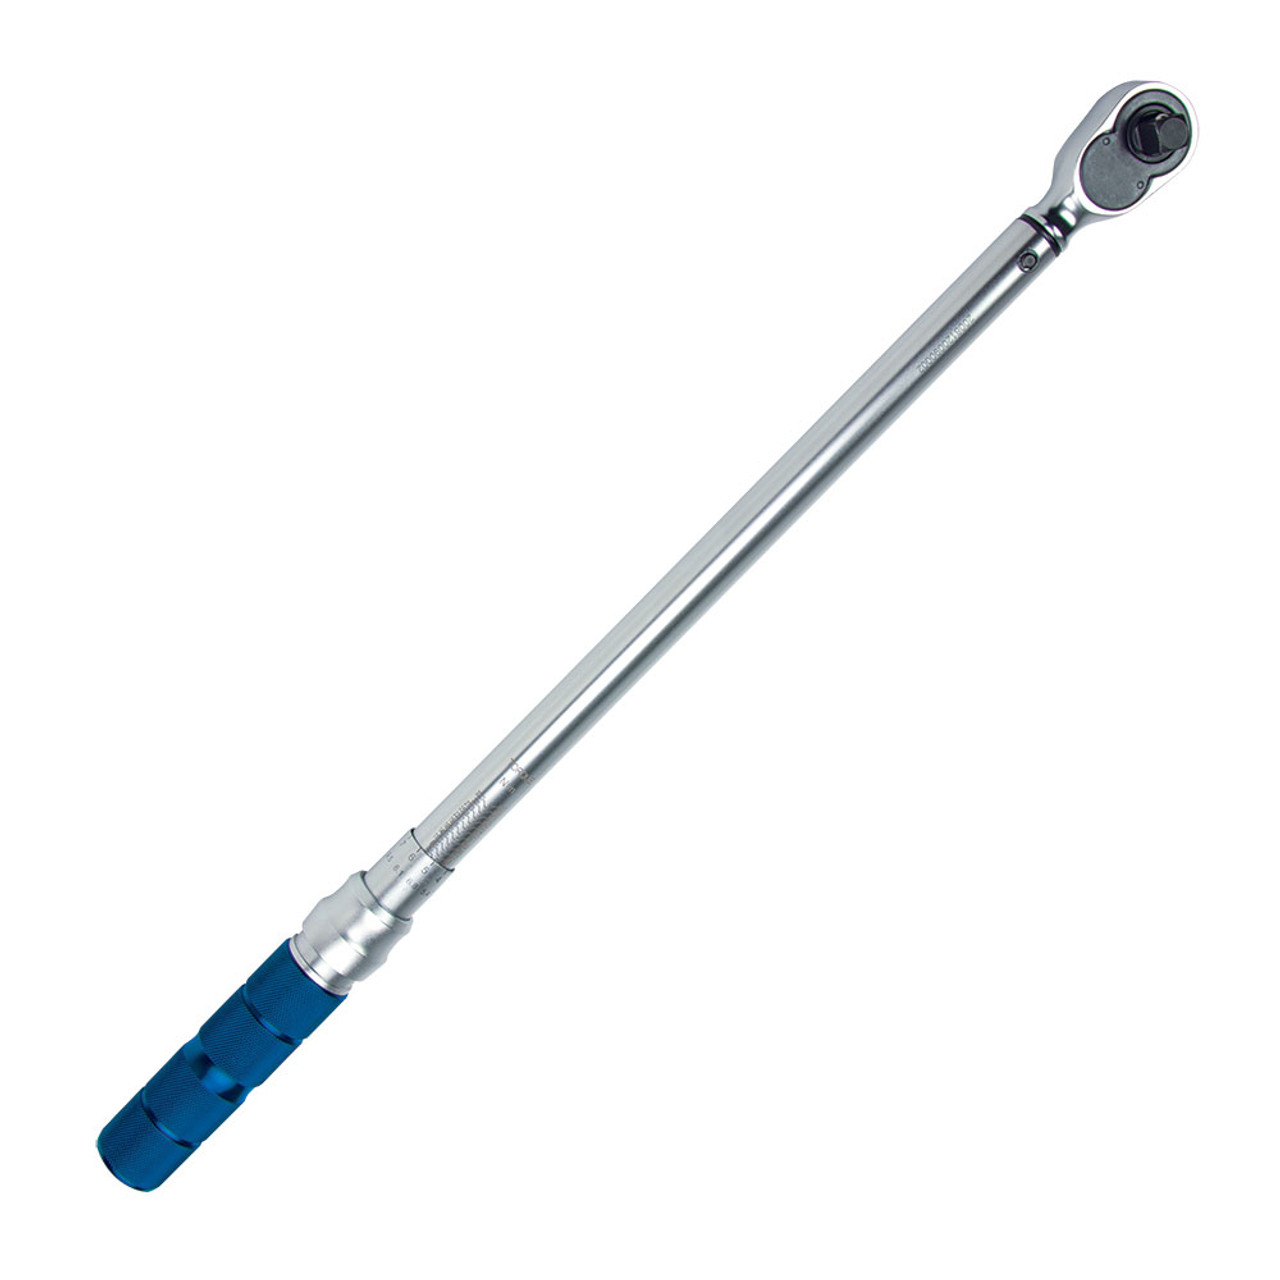 Ken-Tool 30532 Industrial Torque Wrench